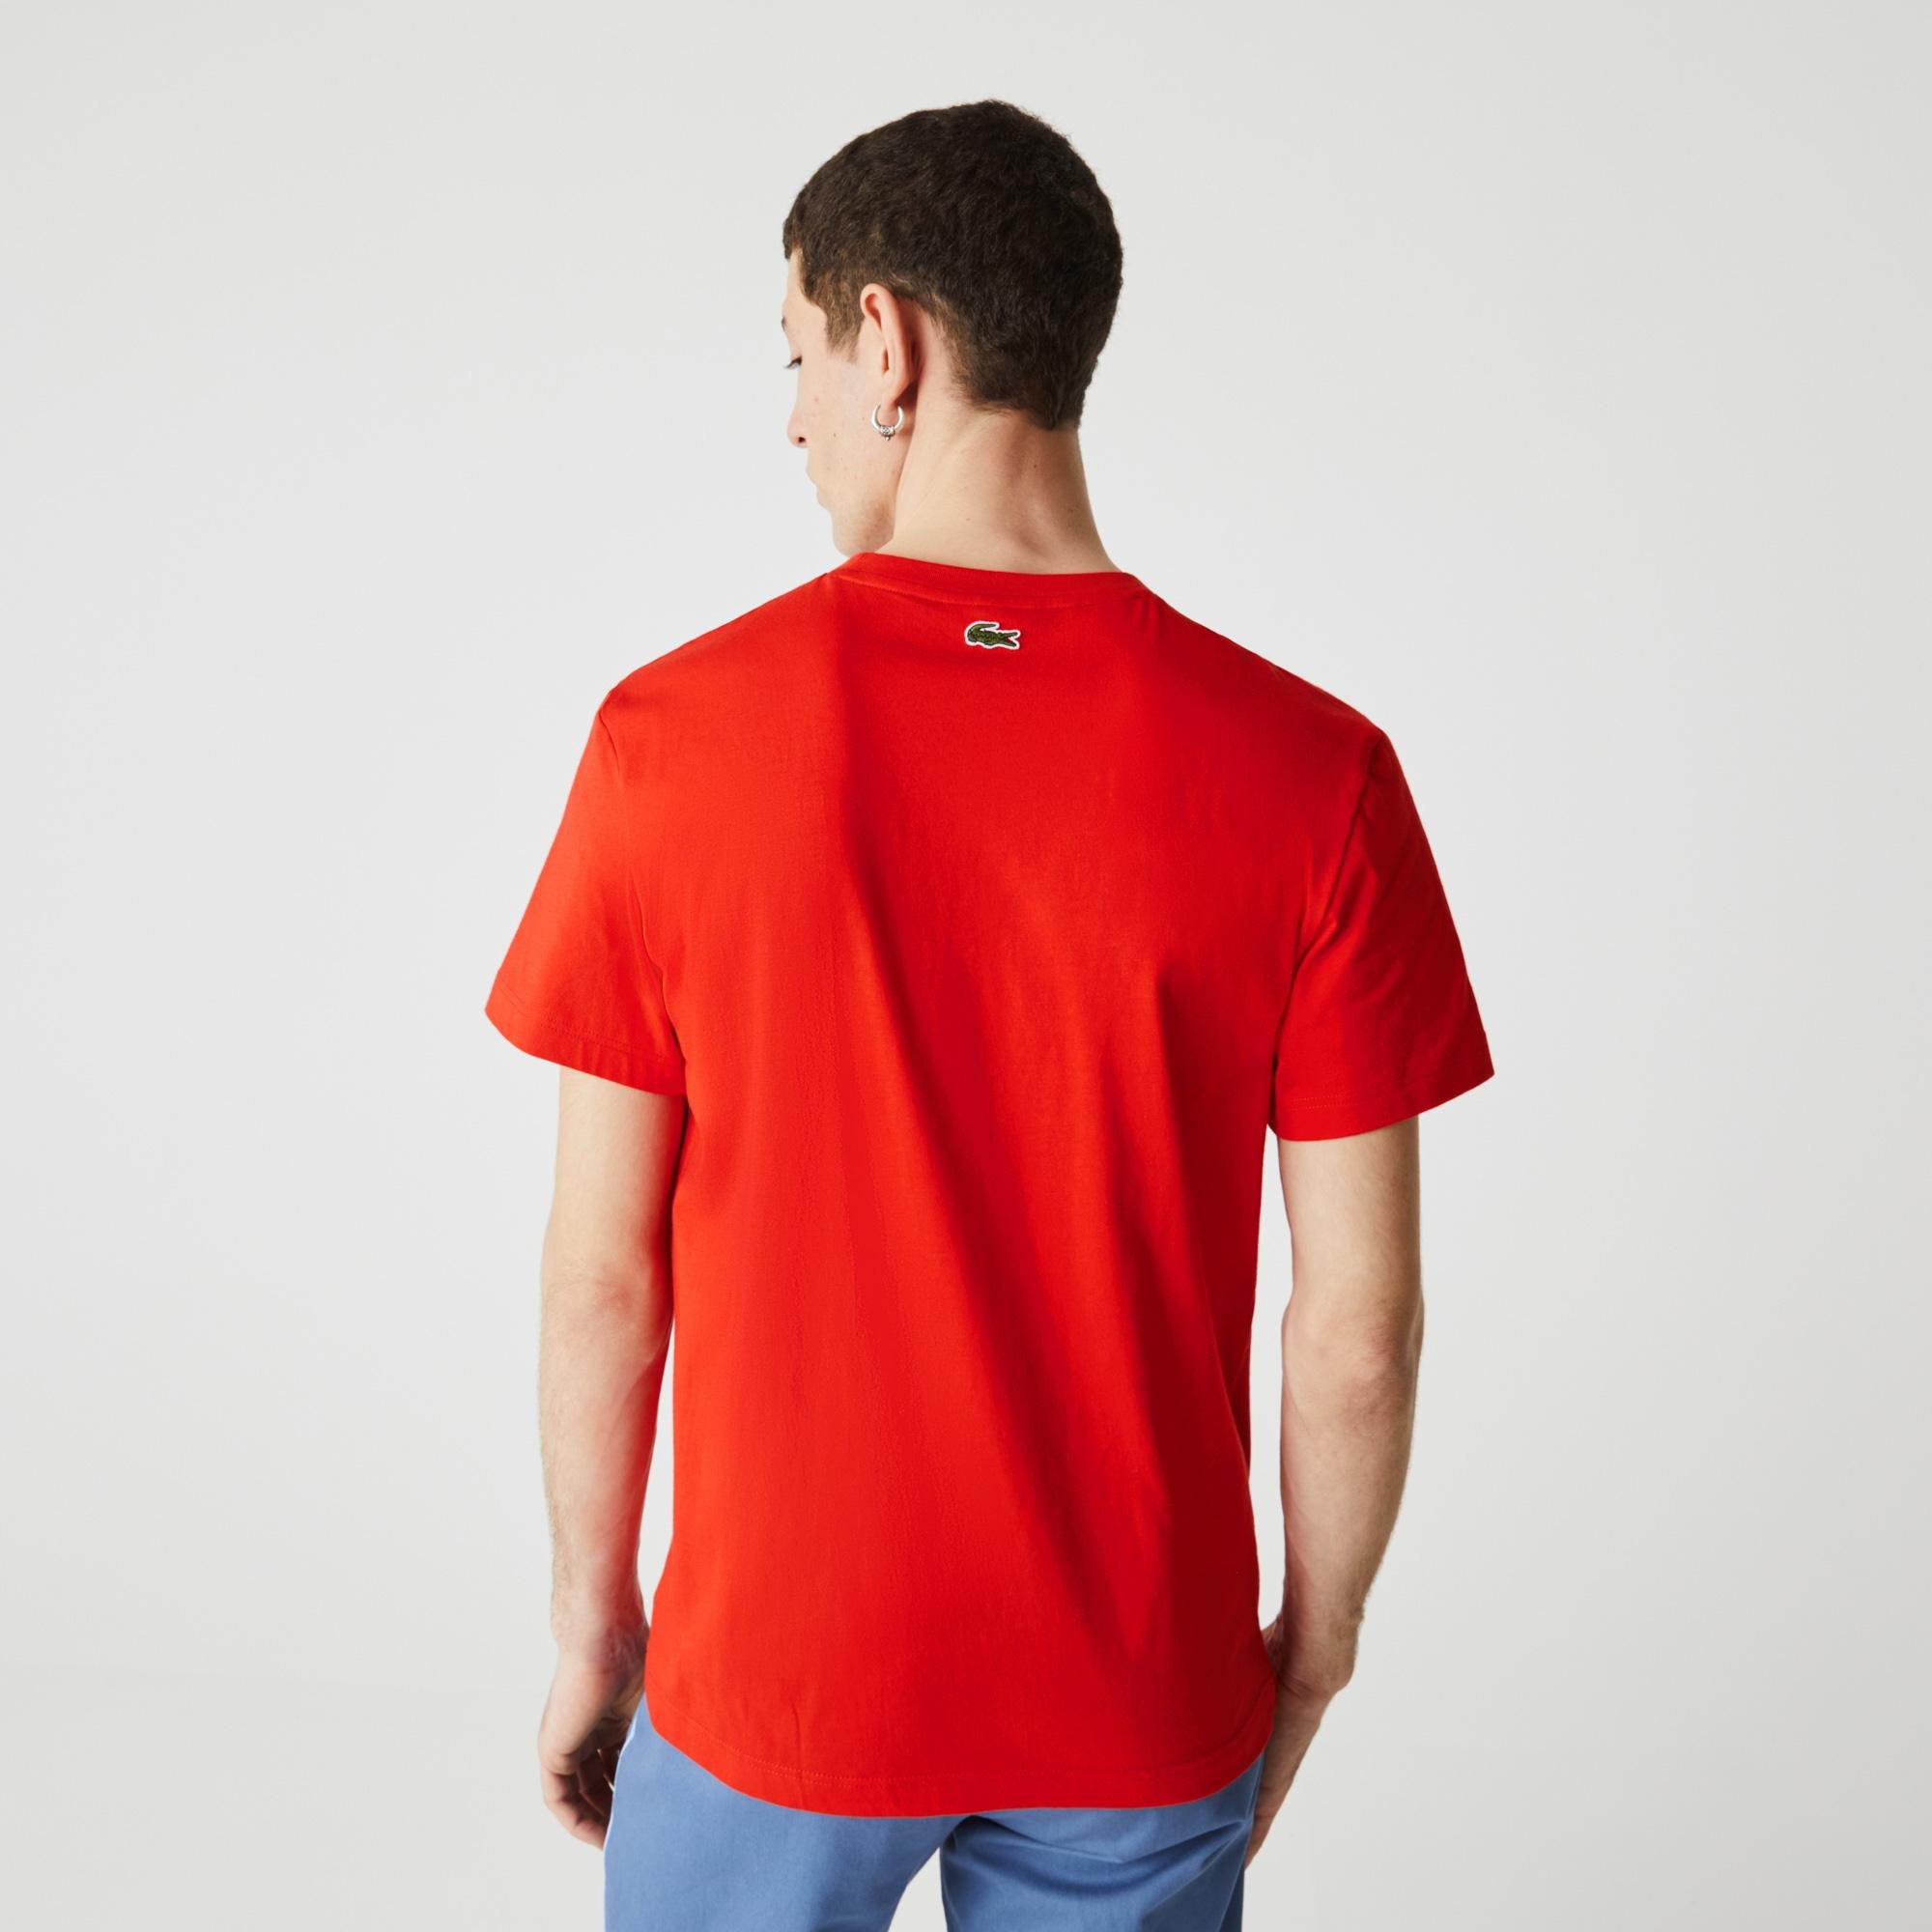 Lacoste férfi kerek nyakú túlméretezett Lacoste Club márkajeles pamut póló